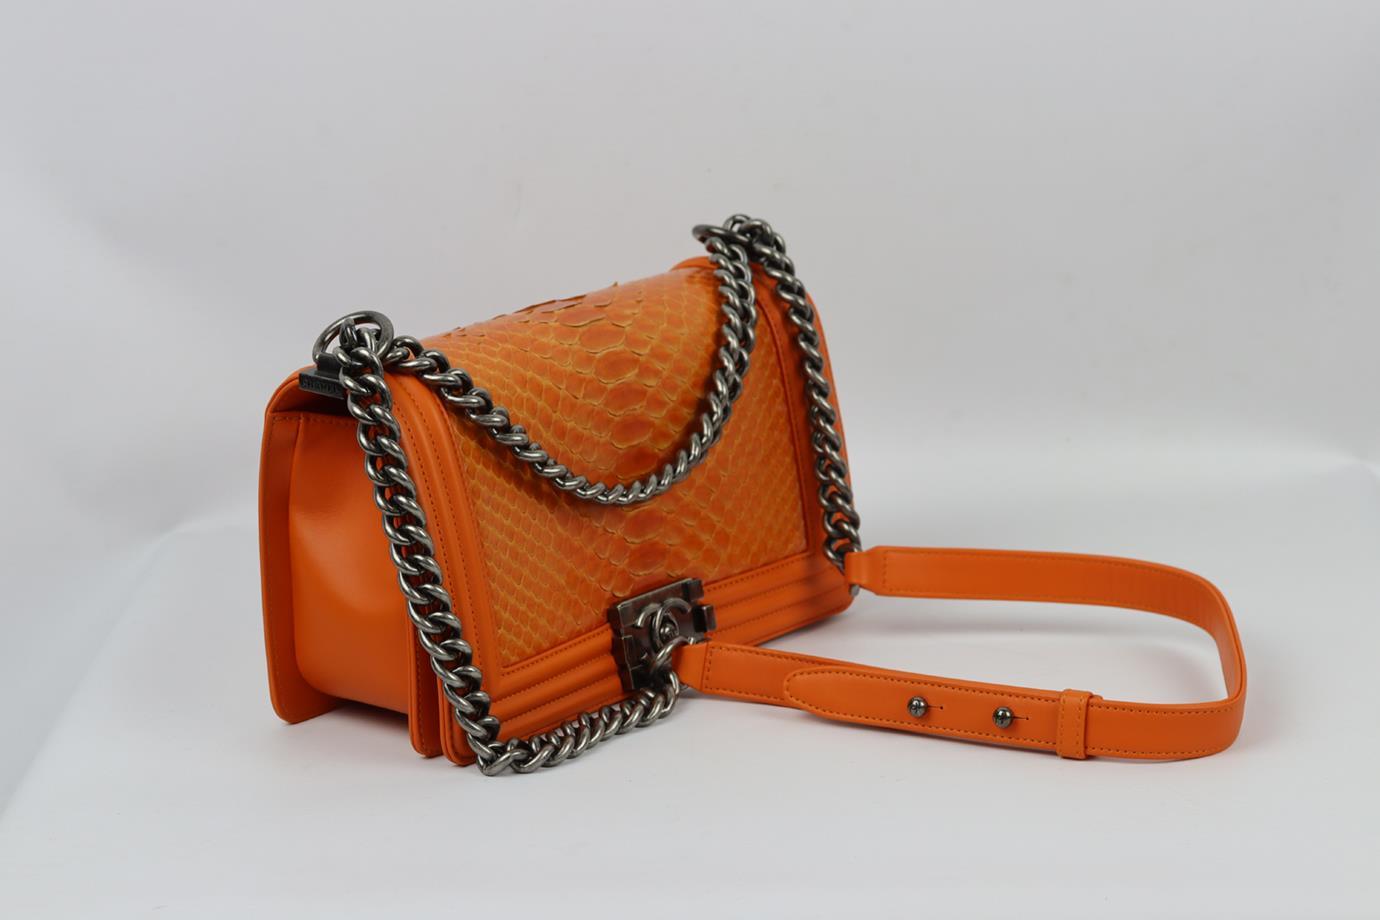 Chanel 2014 Boy Medium Python And Leather Shoulder Bag For Sale 2